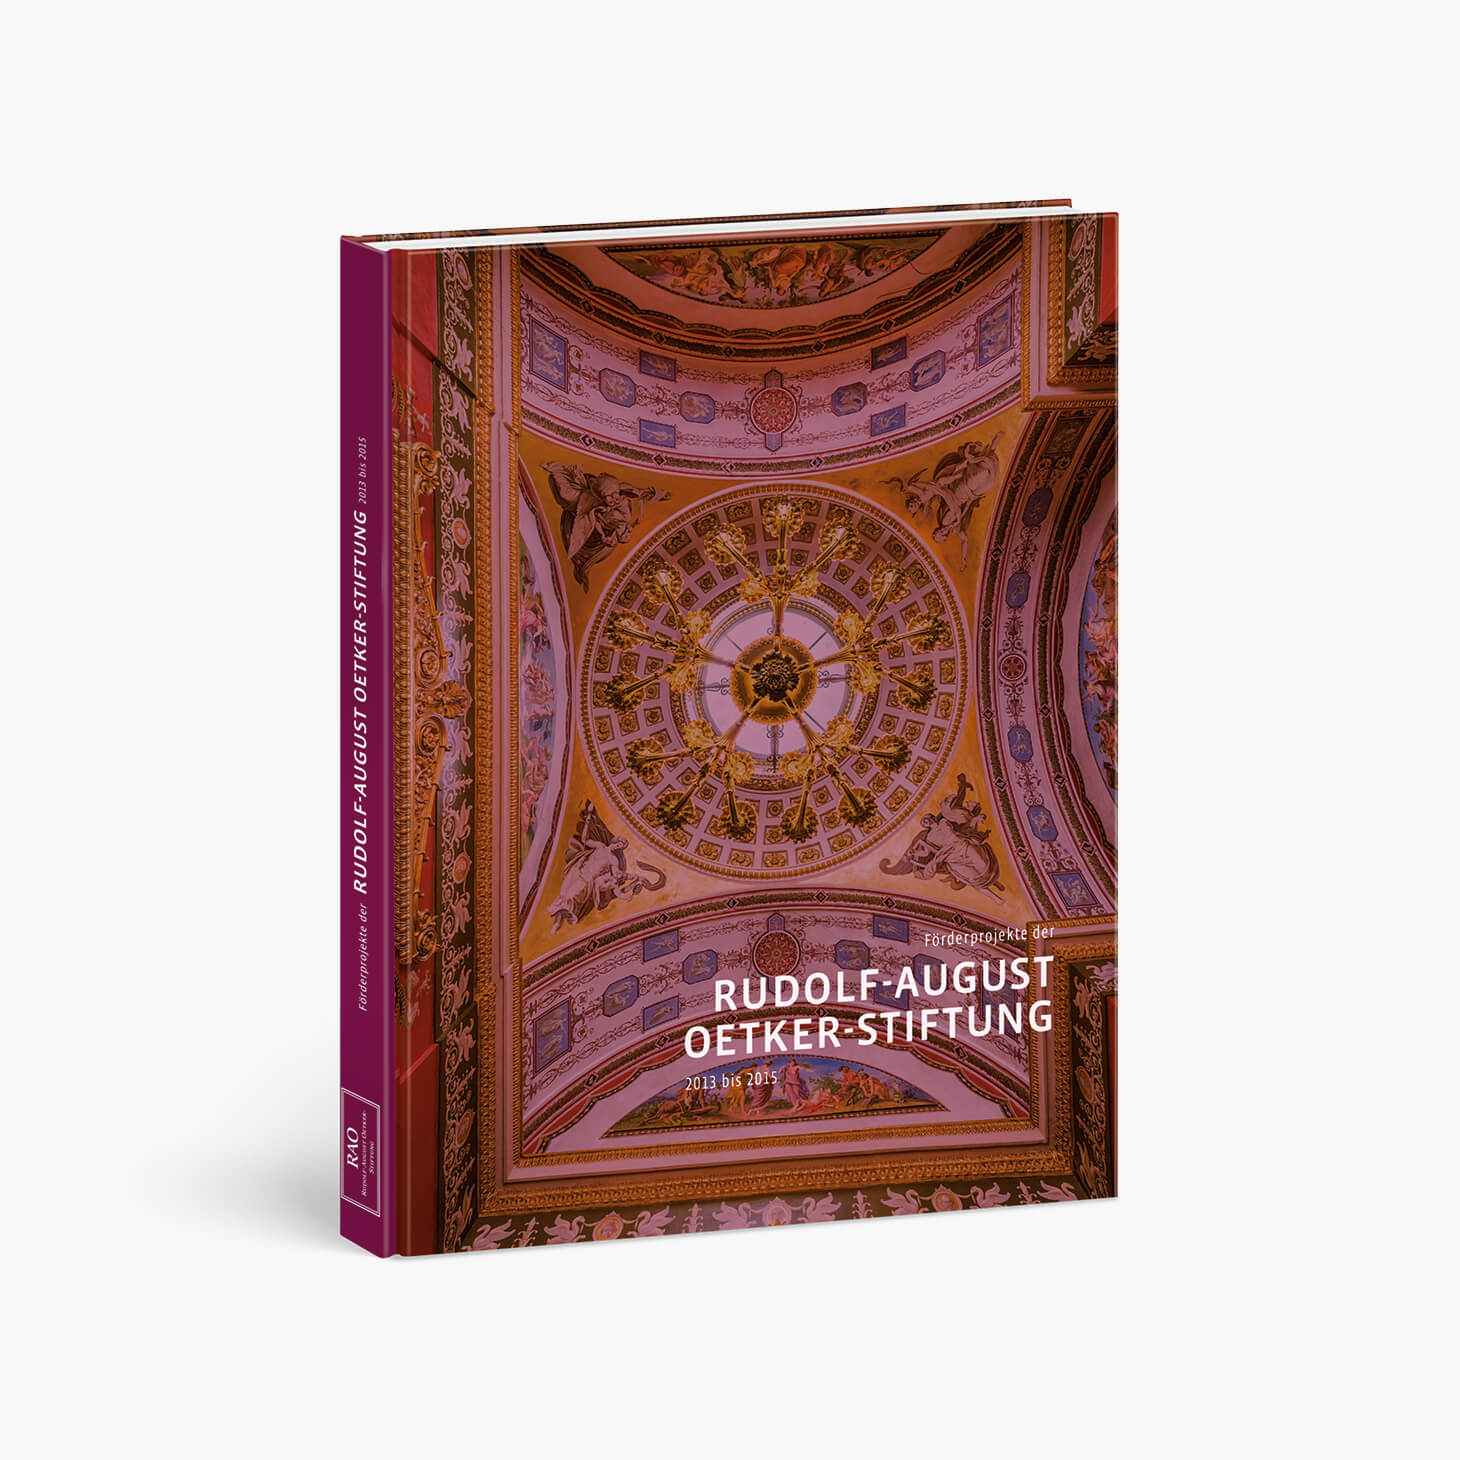 Buchcover von Förderprojekte der Rudolf-August Oetker-Stiftung von 2013 bis 2015